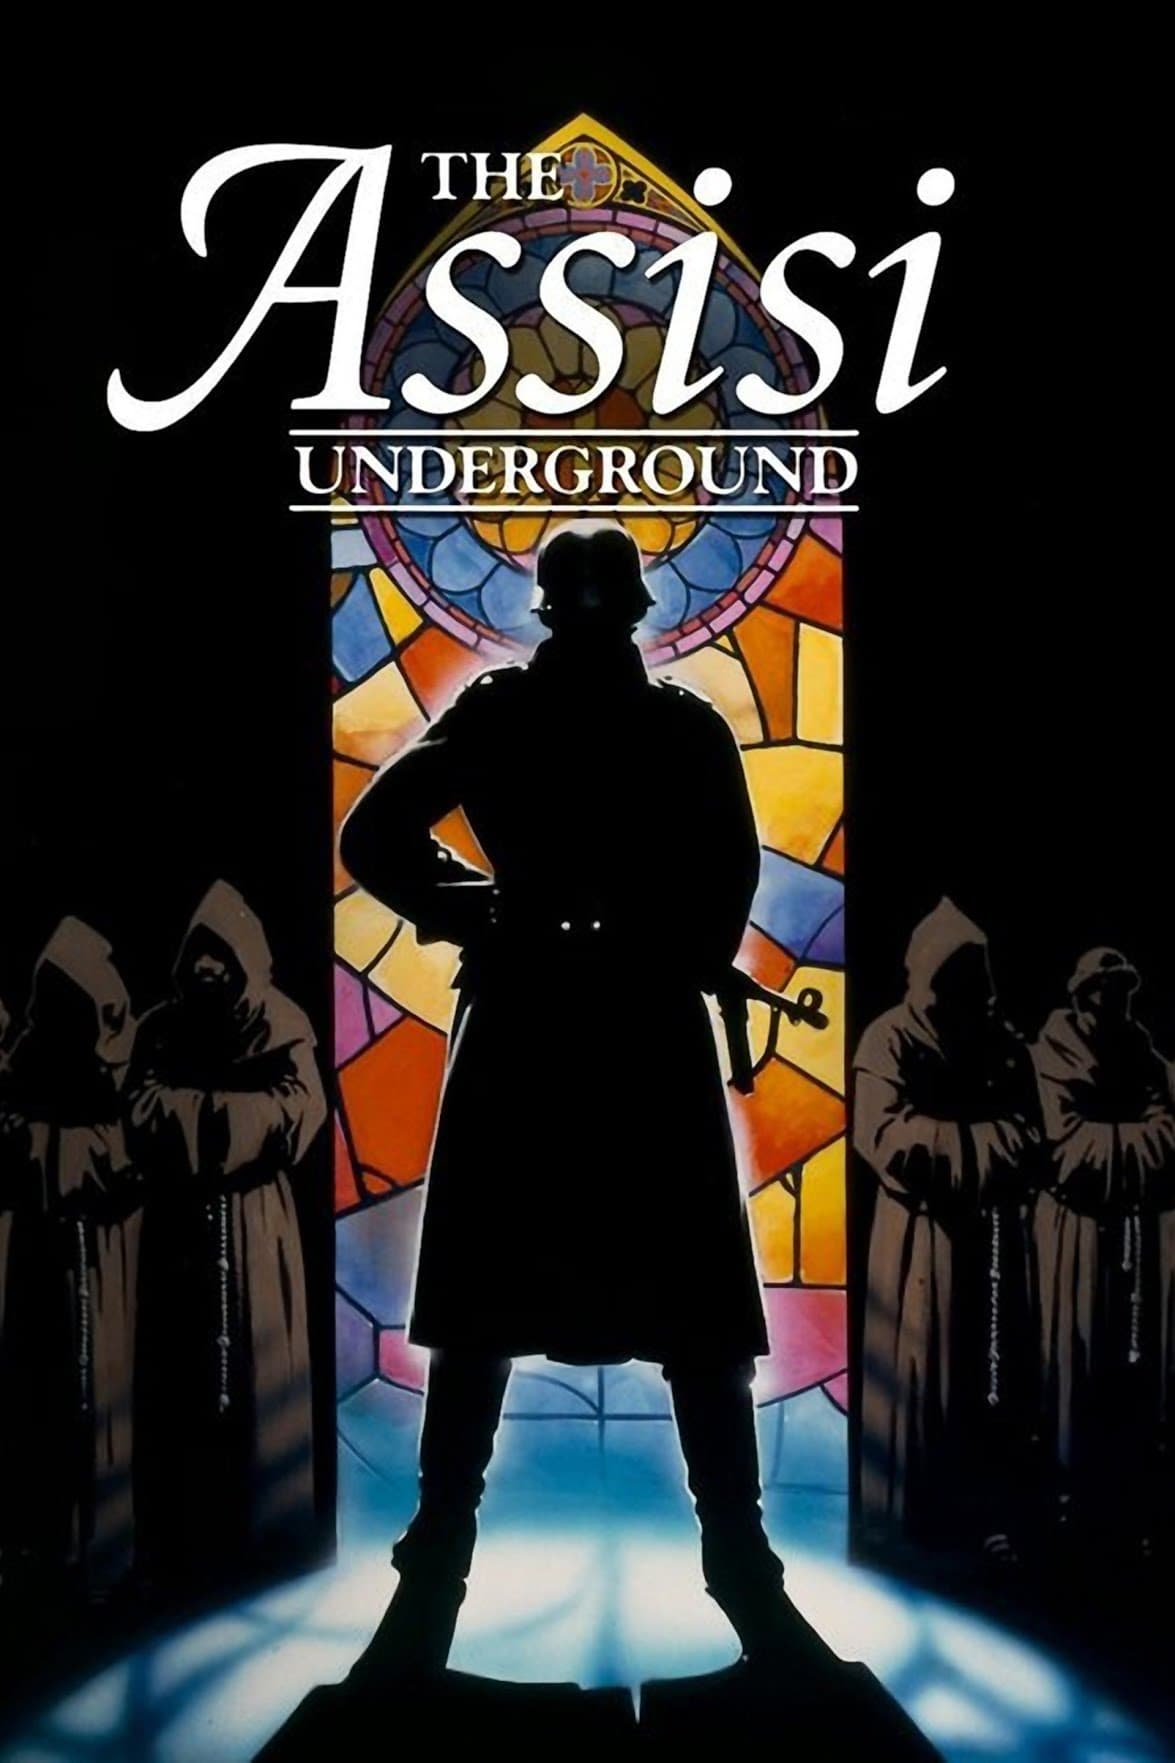 The Assisi Underground film